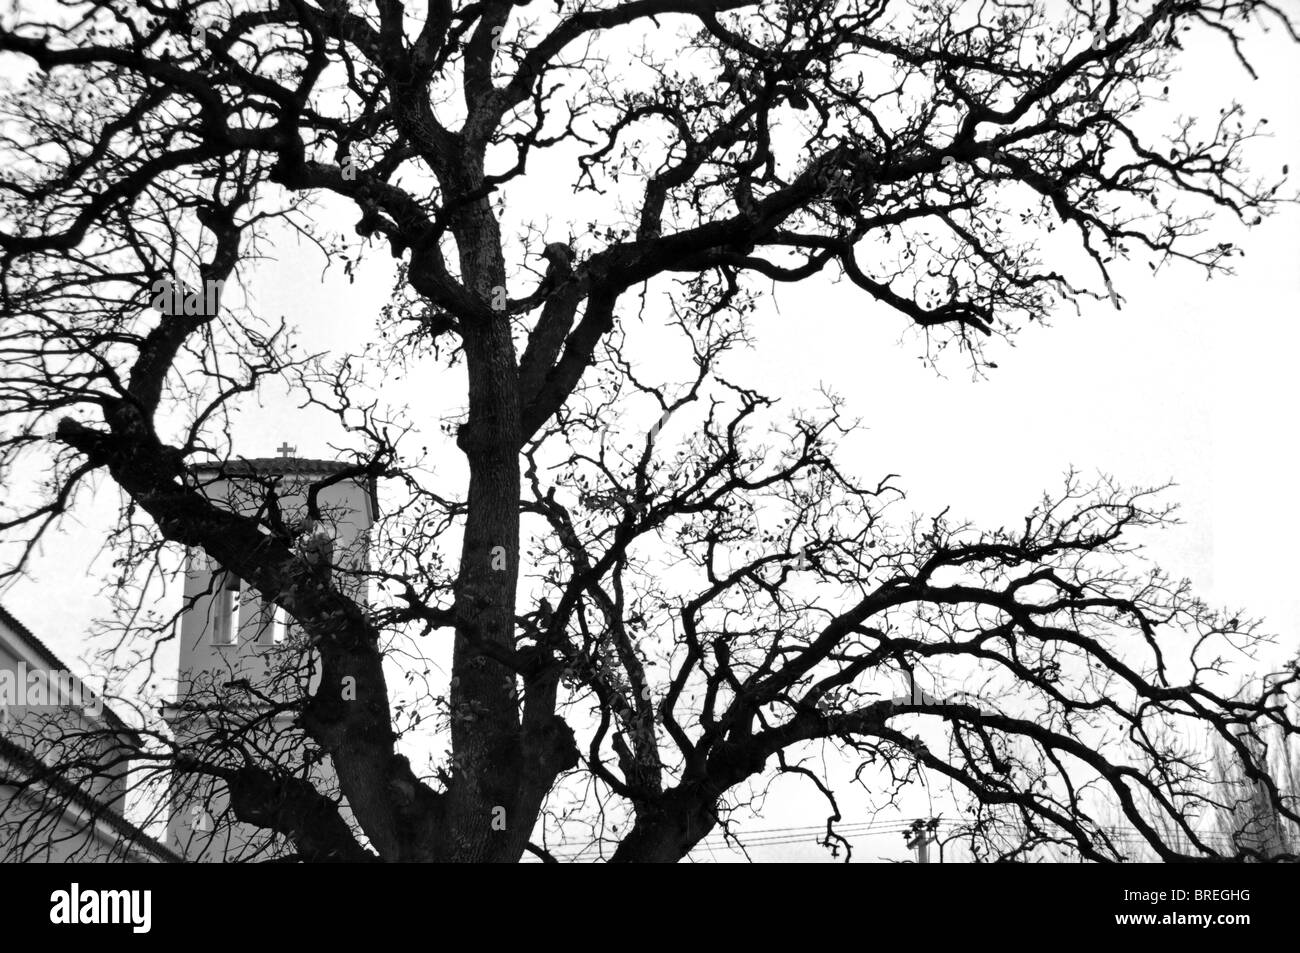 Chêne de l'église cachée par les branches d'arbres silhouette. Noir et blanc. Banque D'Images